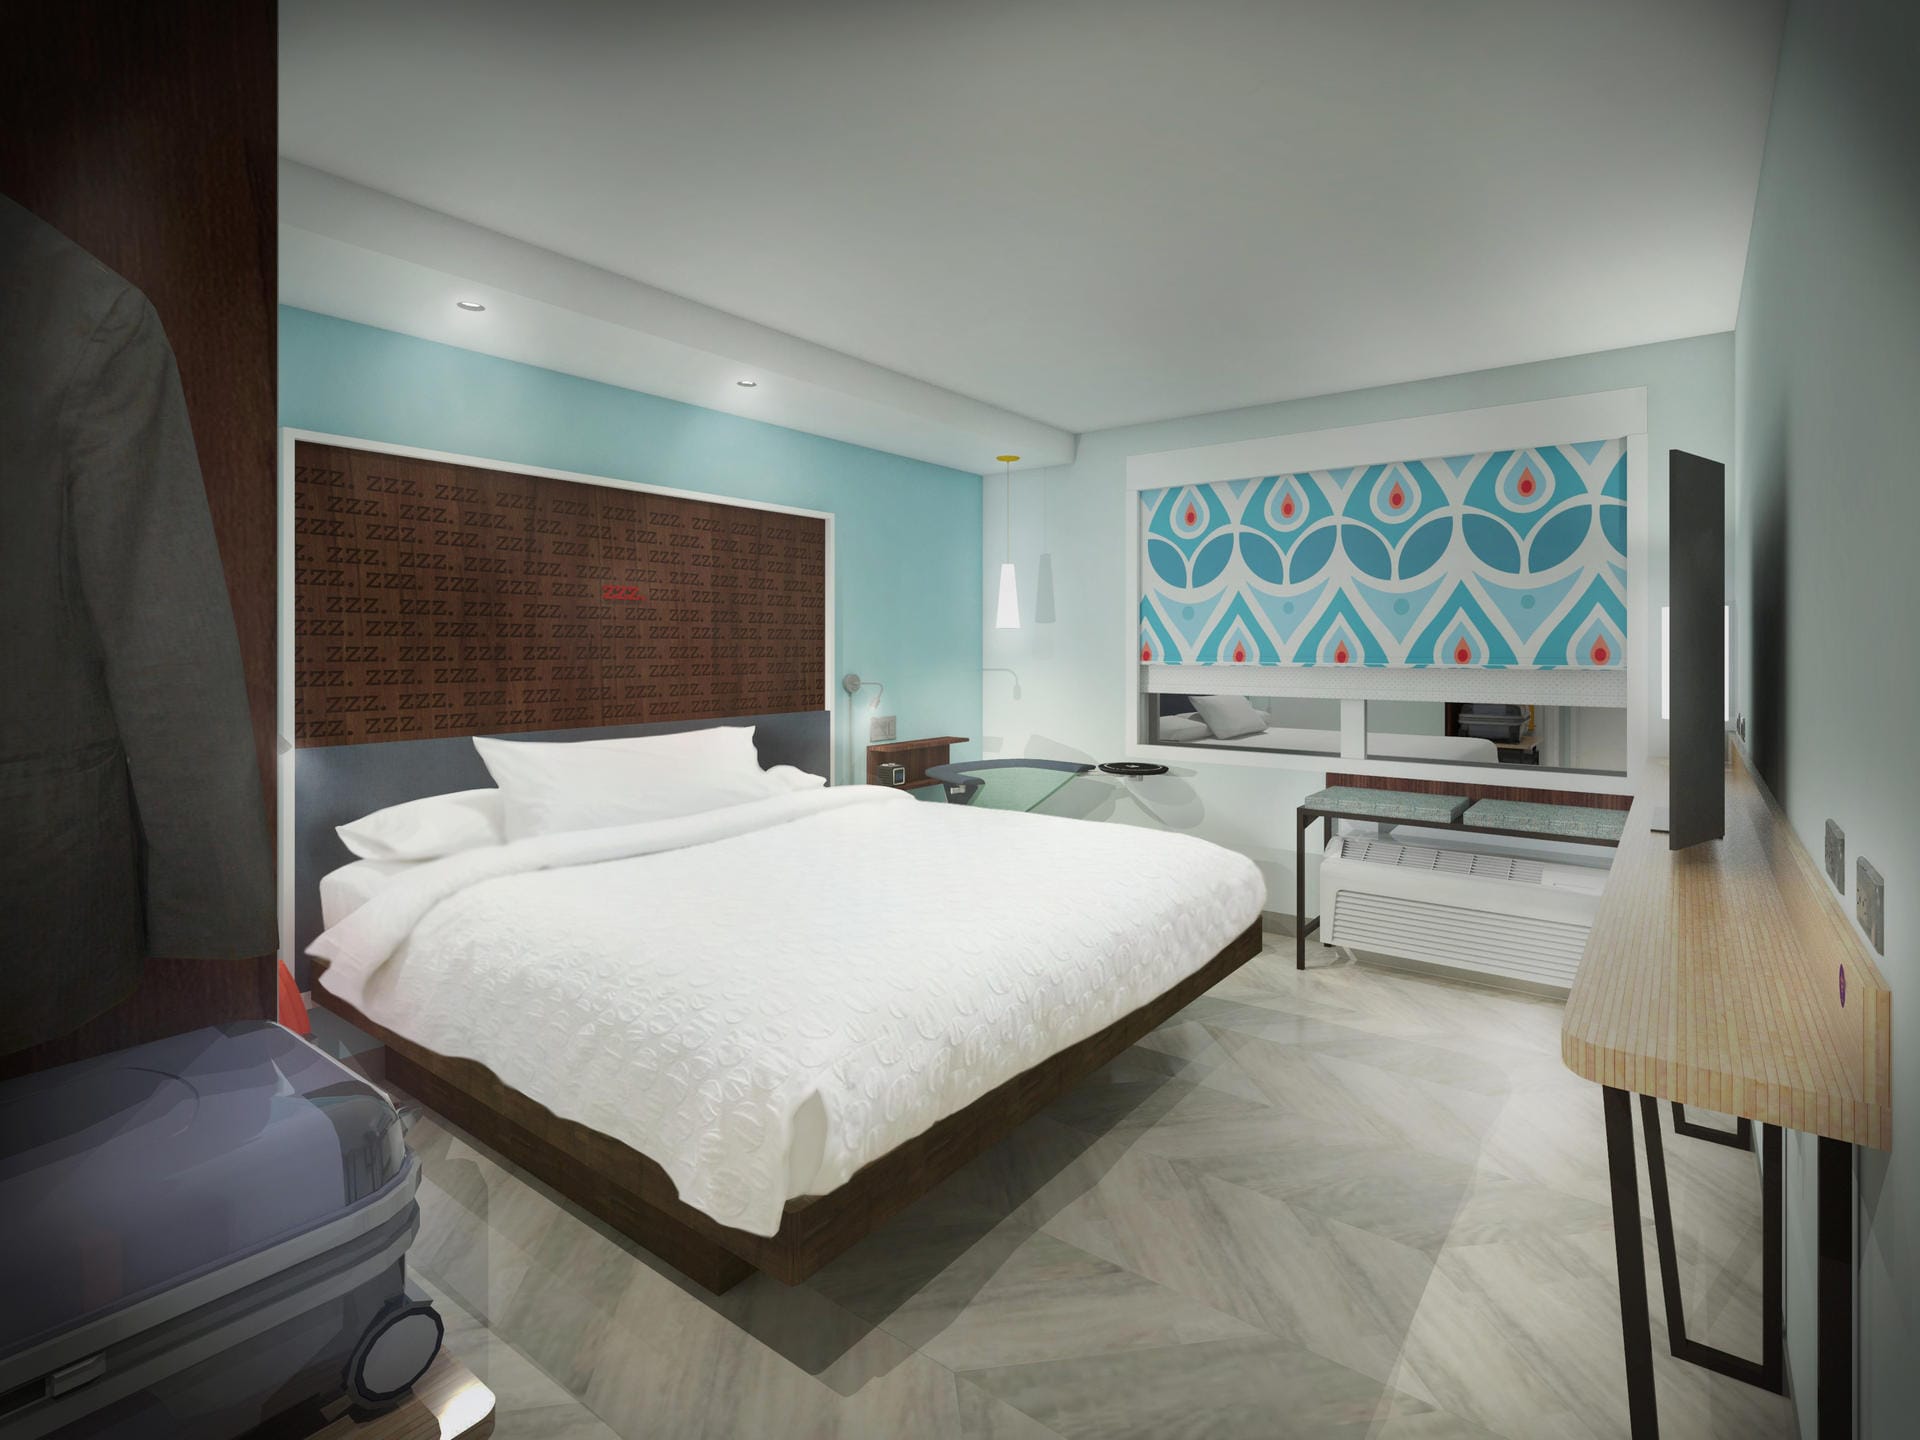 Auch die Hotelkette "Tru by Hilton" setzt auf schickes Design auf wenig Raum. Vor allem in Metropolen lohnen sich die Hotels mit vielen kleinen Zimmern.